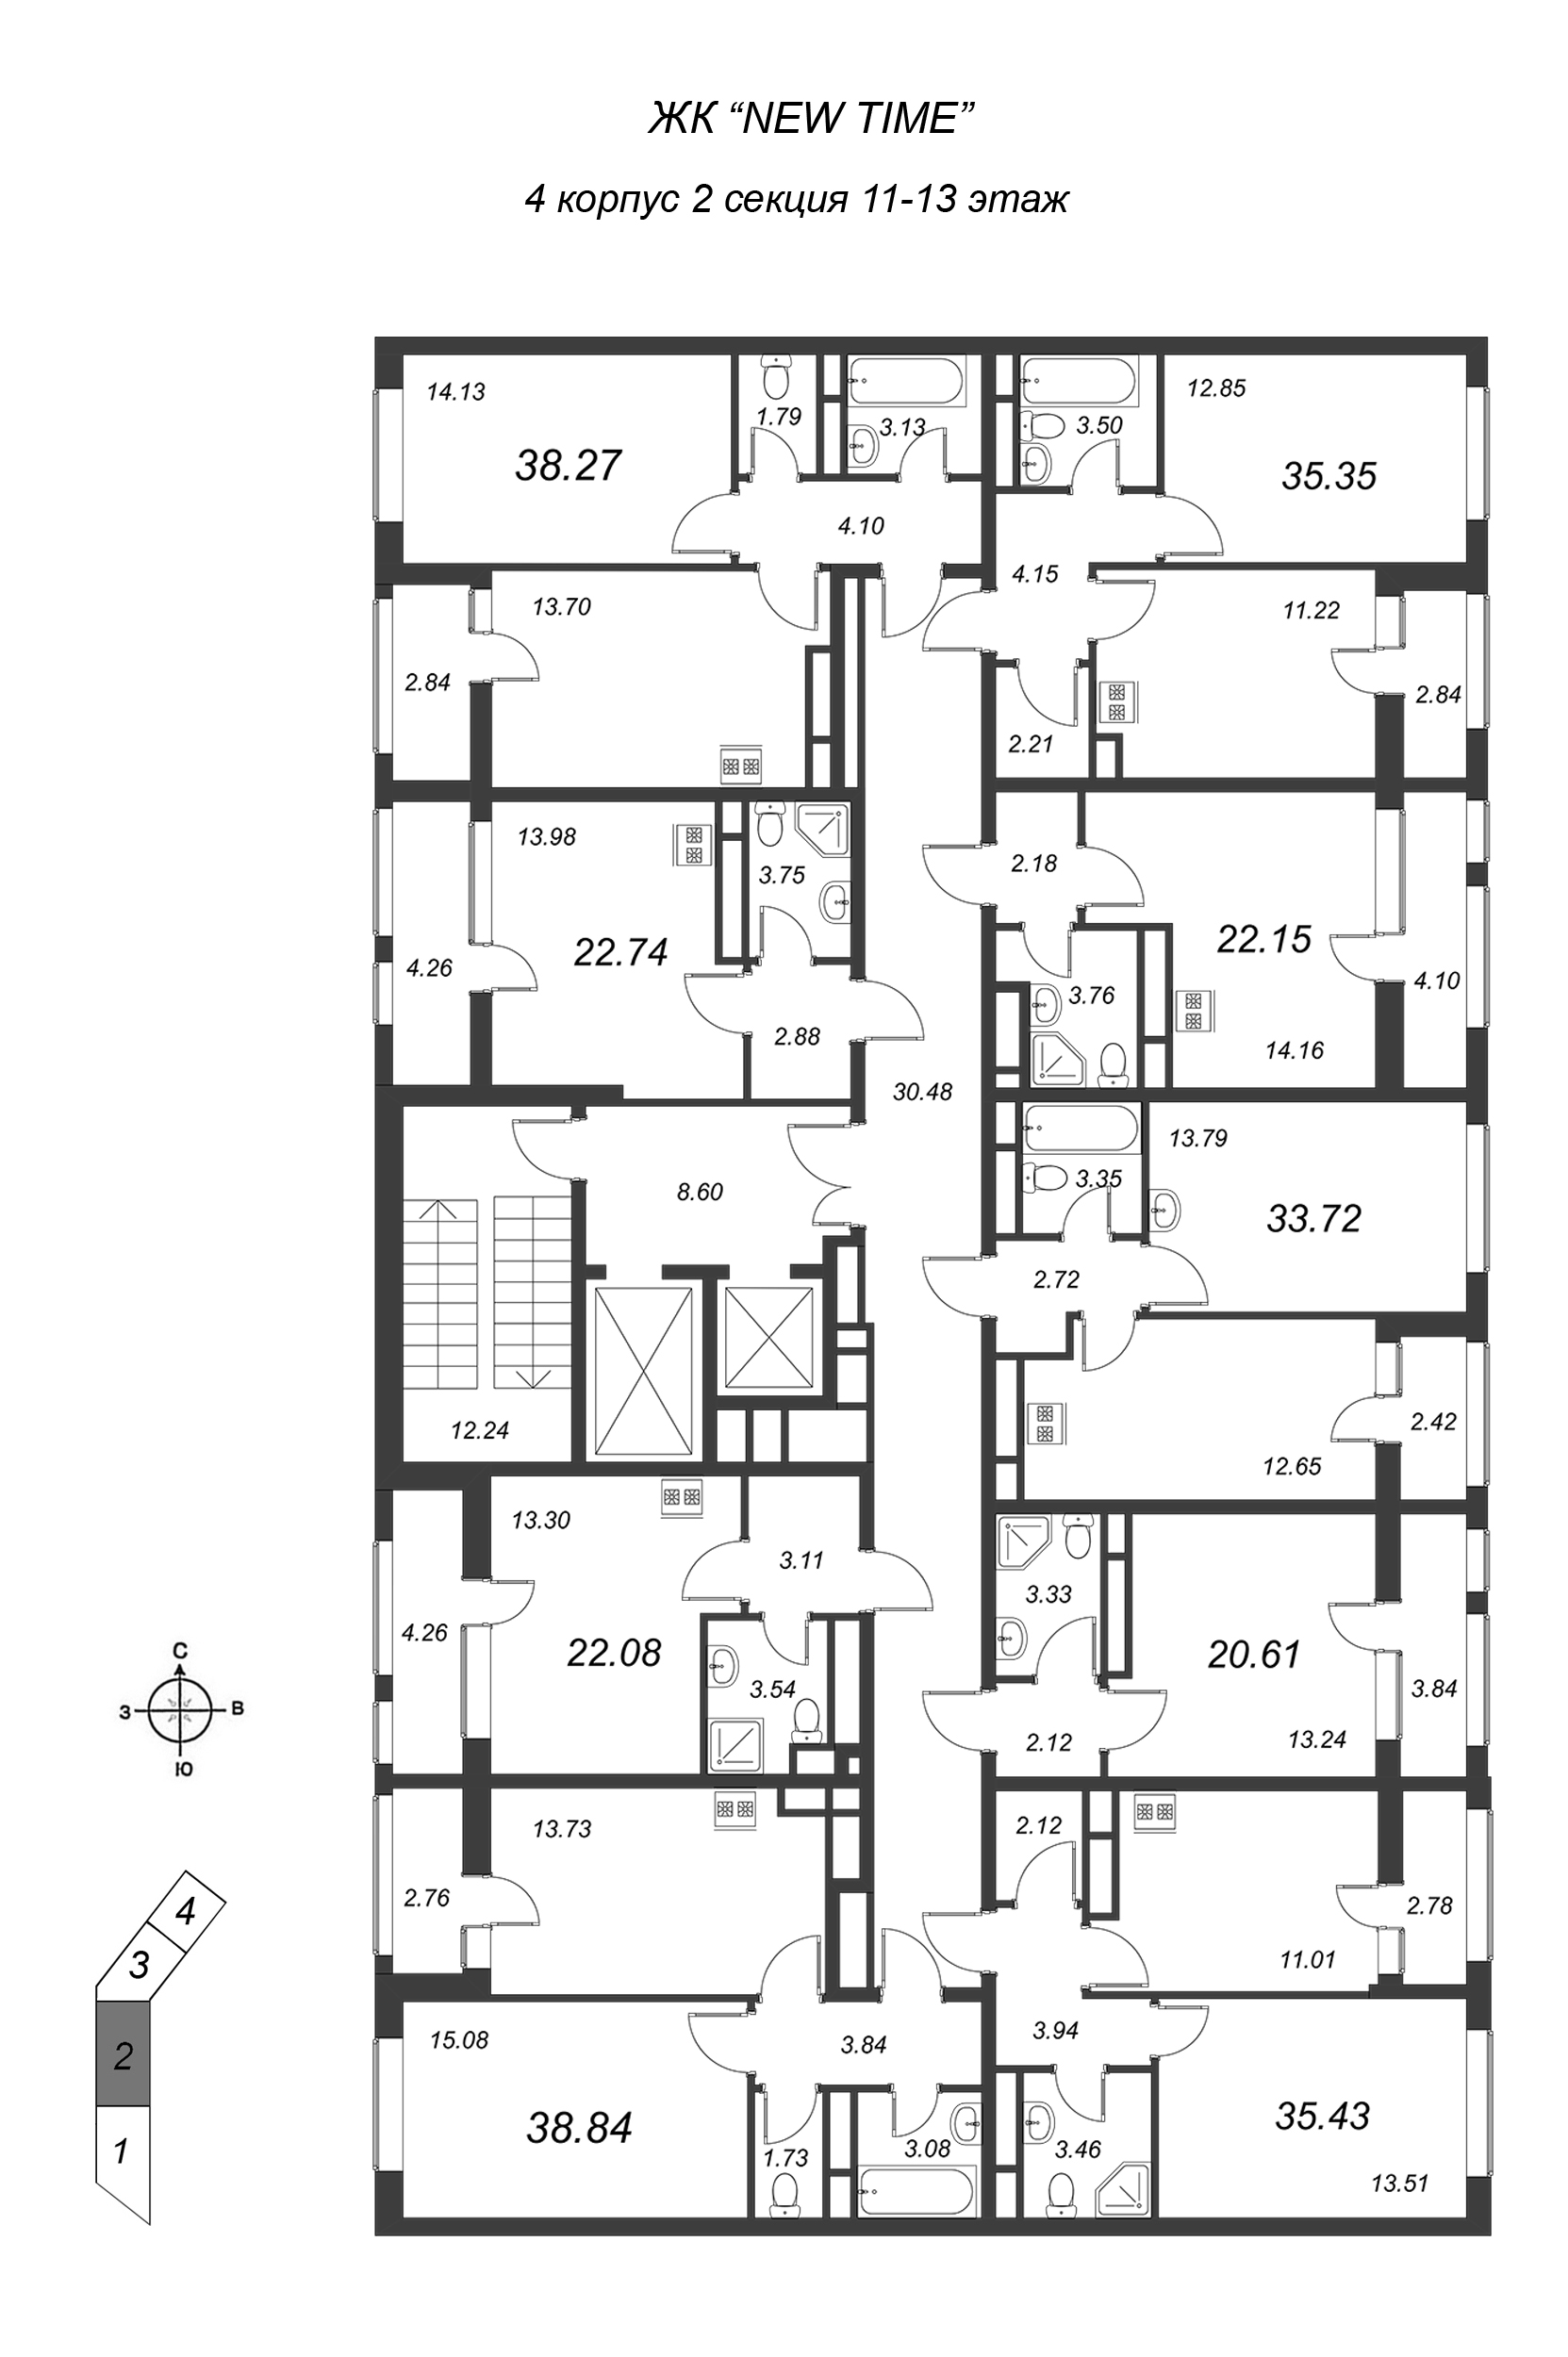 Квартира-студия, 22.15 м² в ЖК "NEW TIME" - планировка этажа